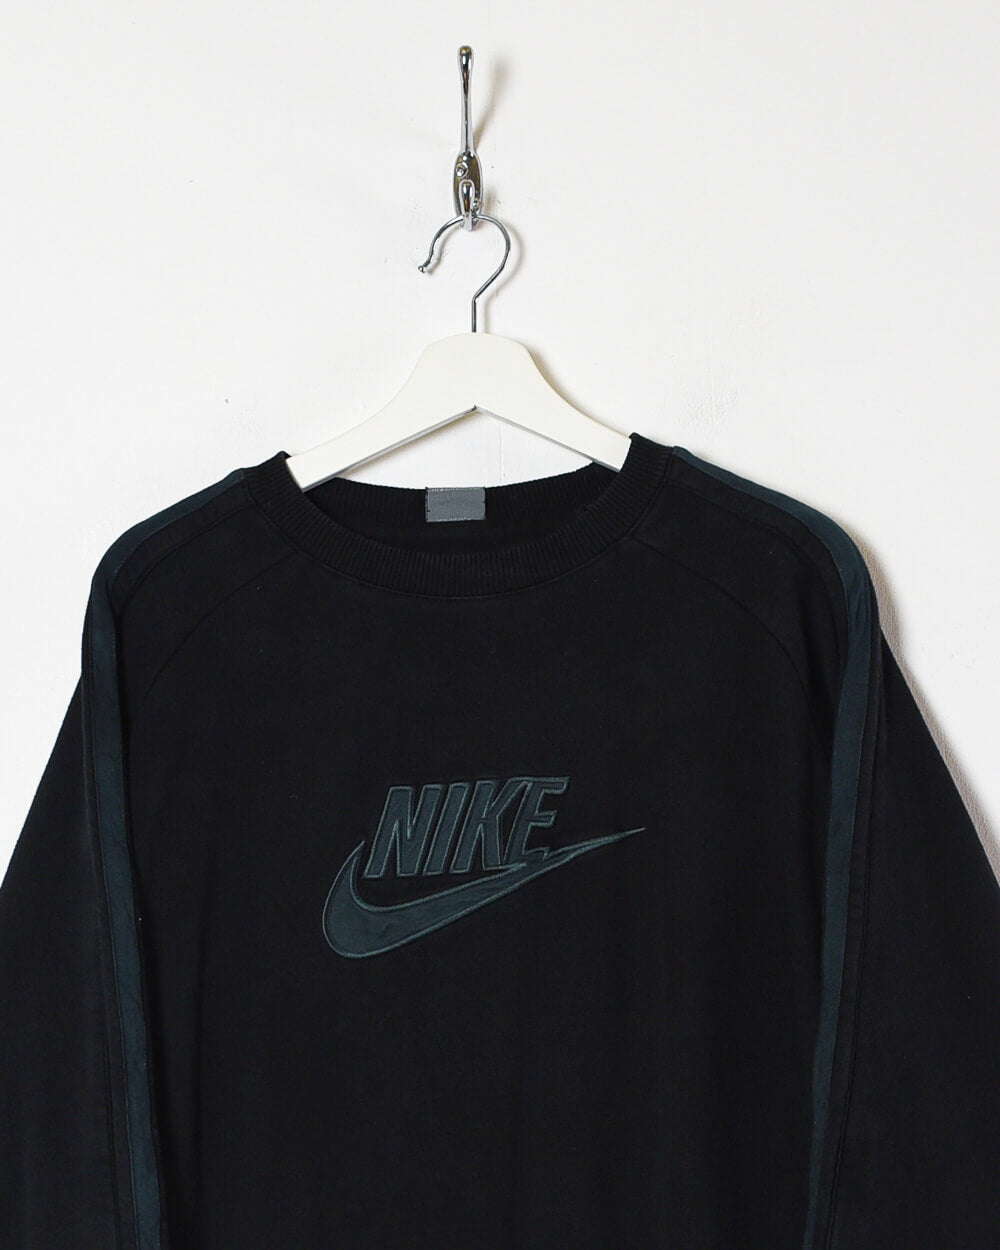 Black Nike Sweatshirt - Small